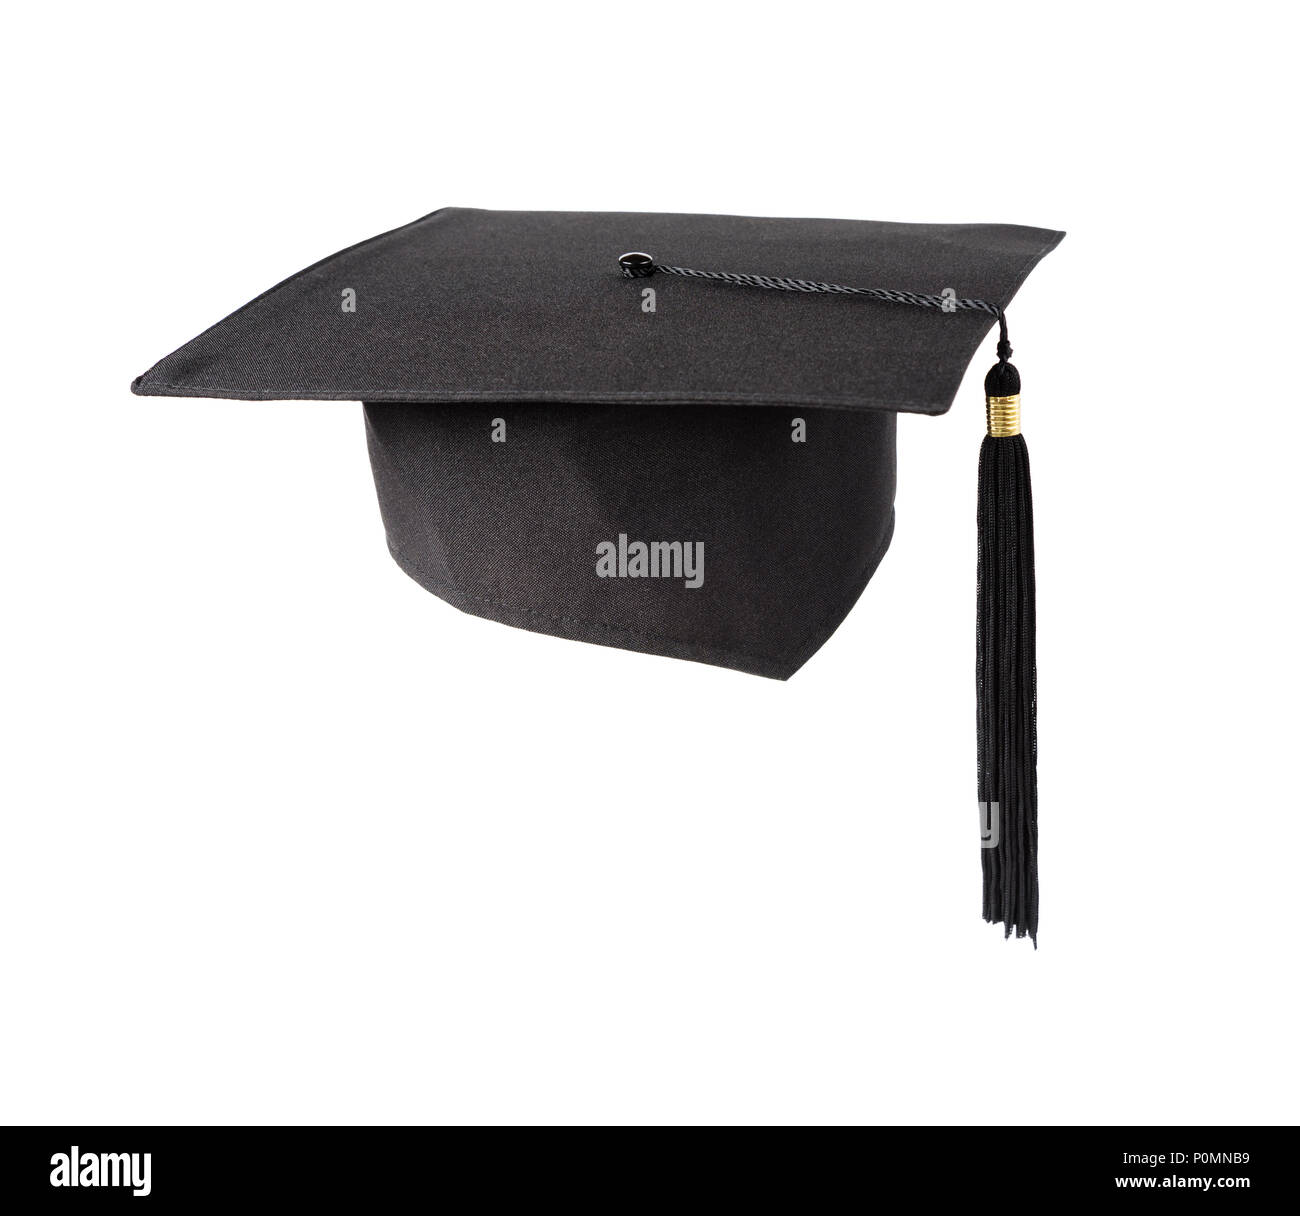 Carré noir chapeau diplômé universitaire (hat) avec un gland isolé sur fond blanc Banque D'Images